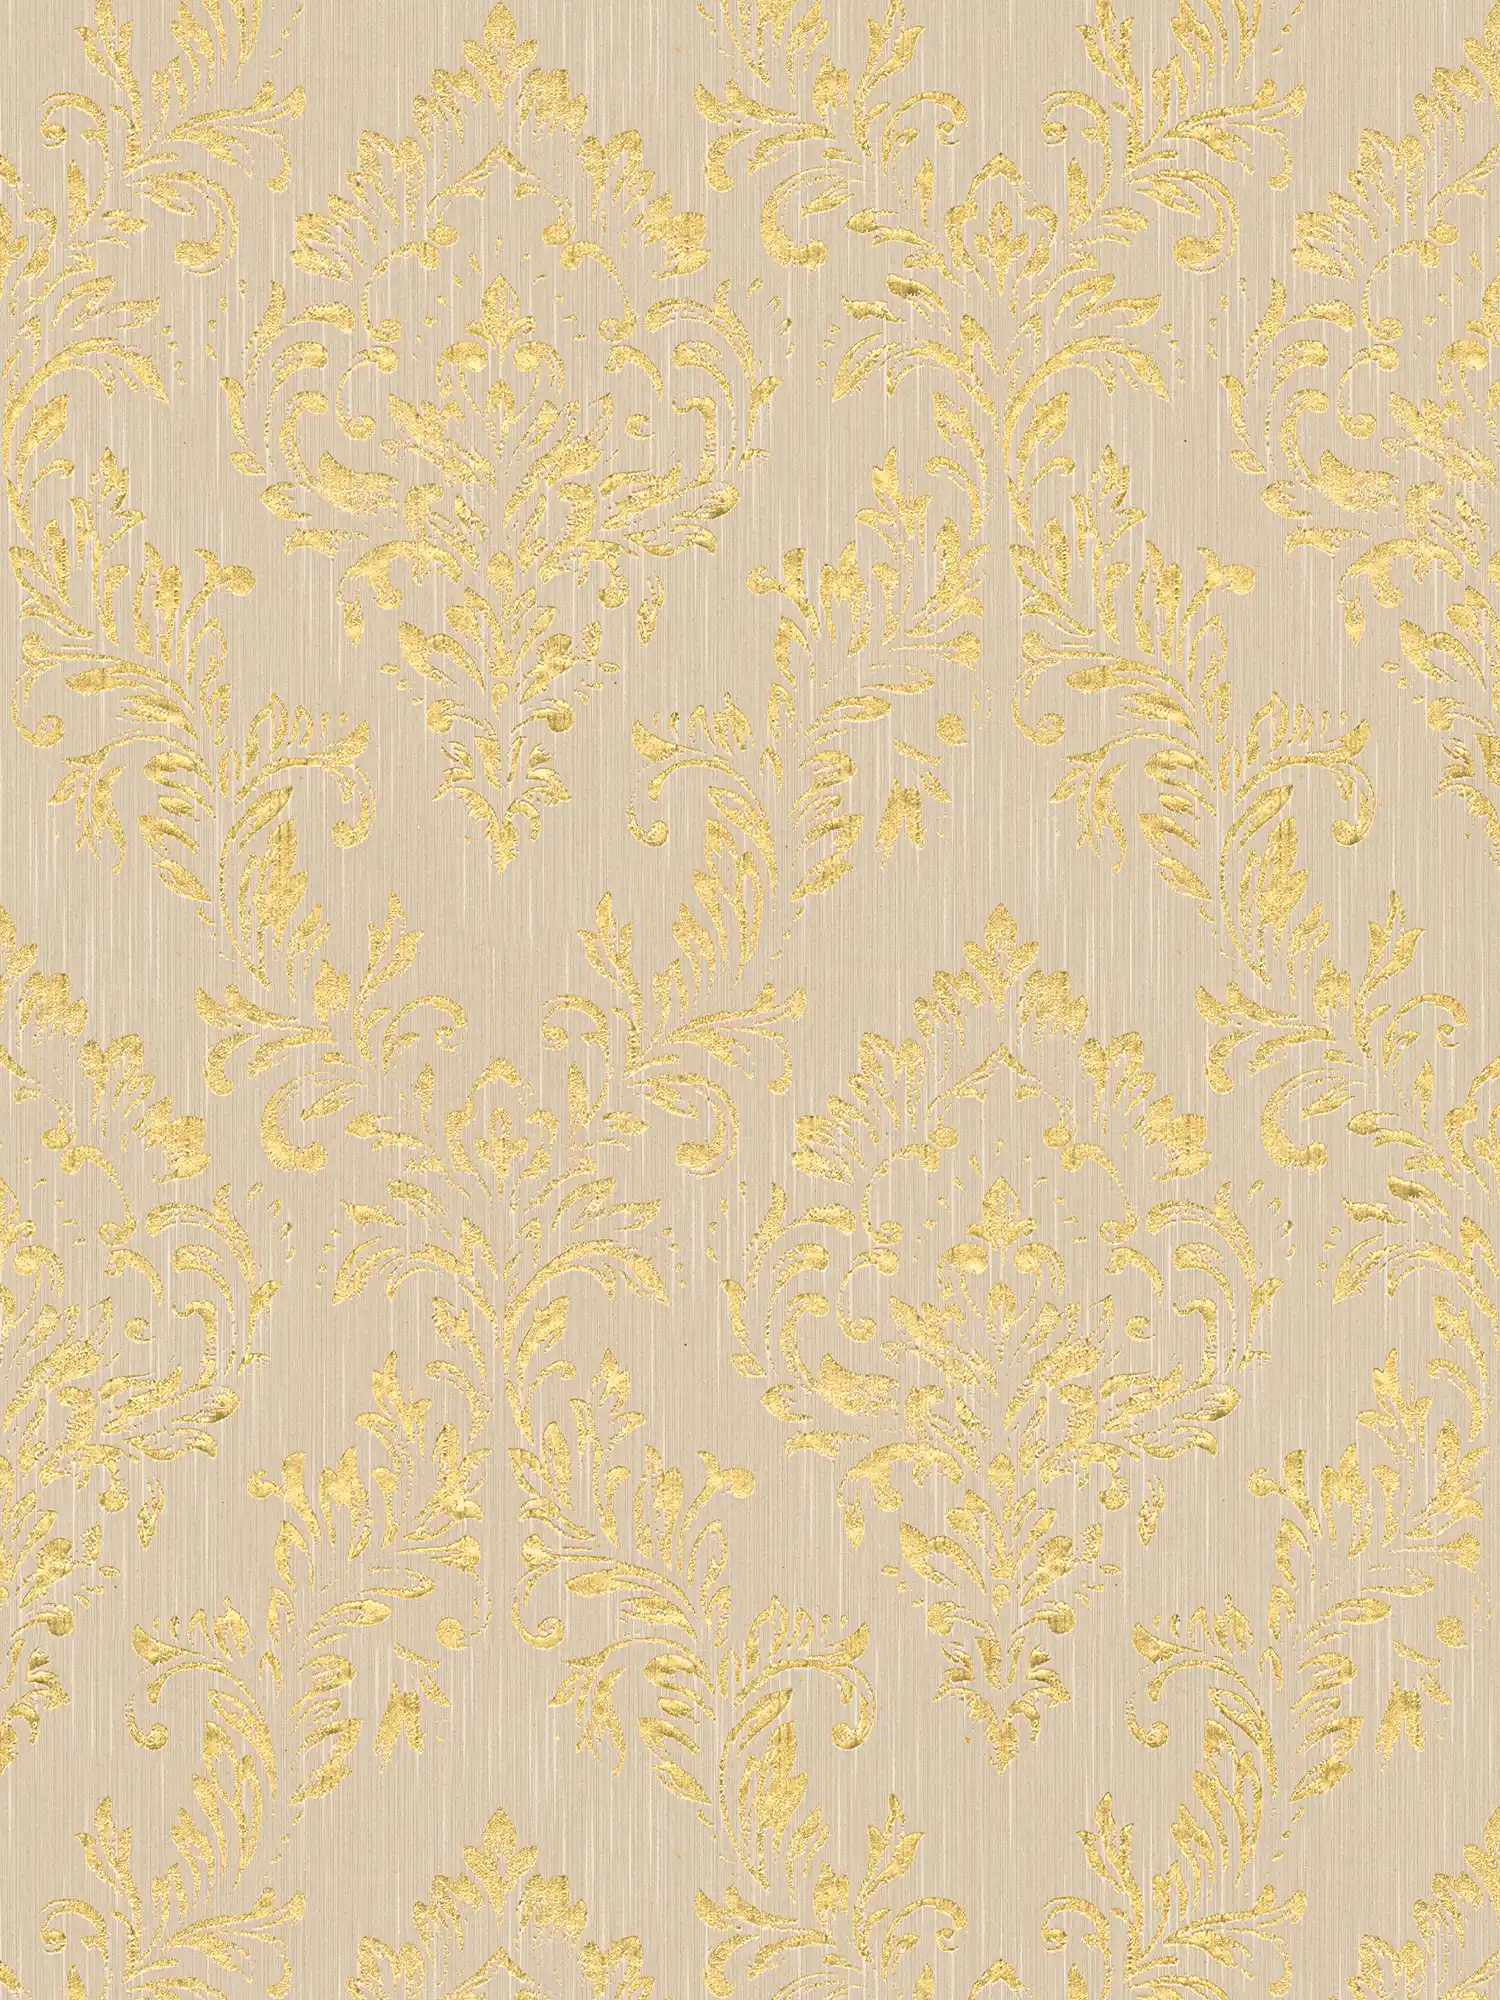 Papier peint ornemental floral avec effet scintillant doré - or, beige
